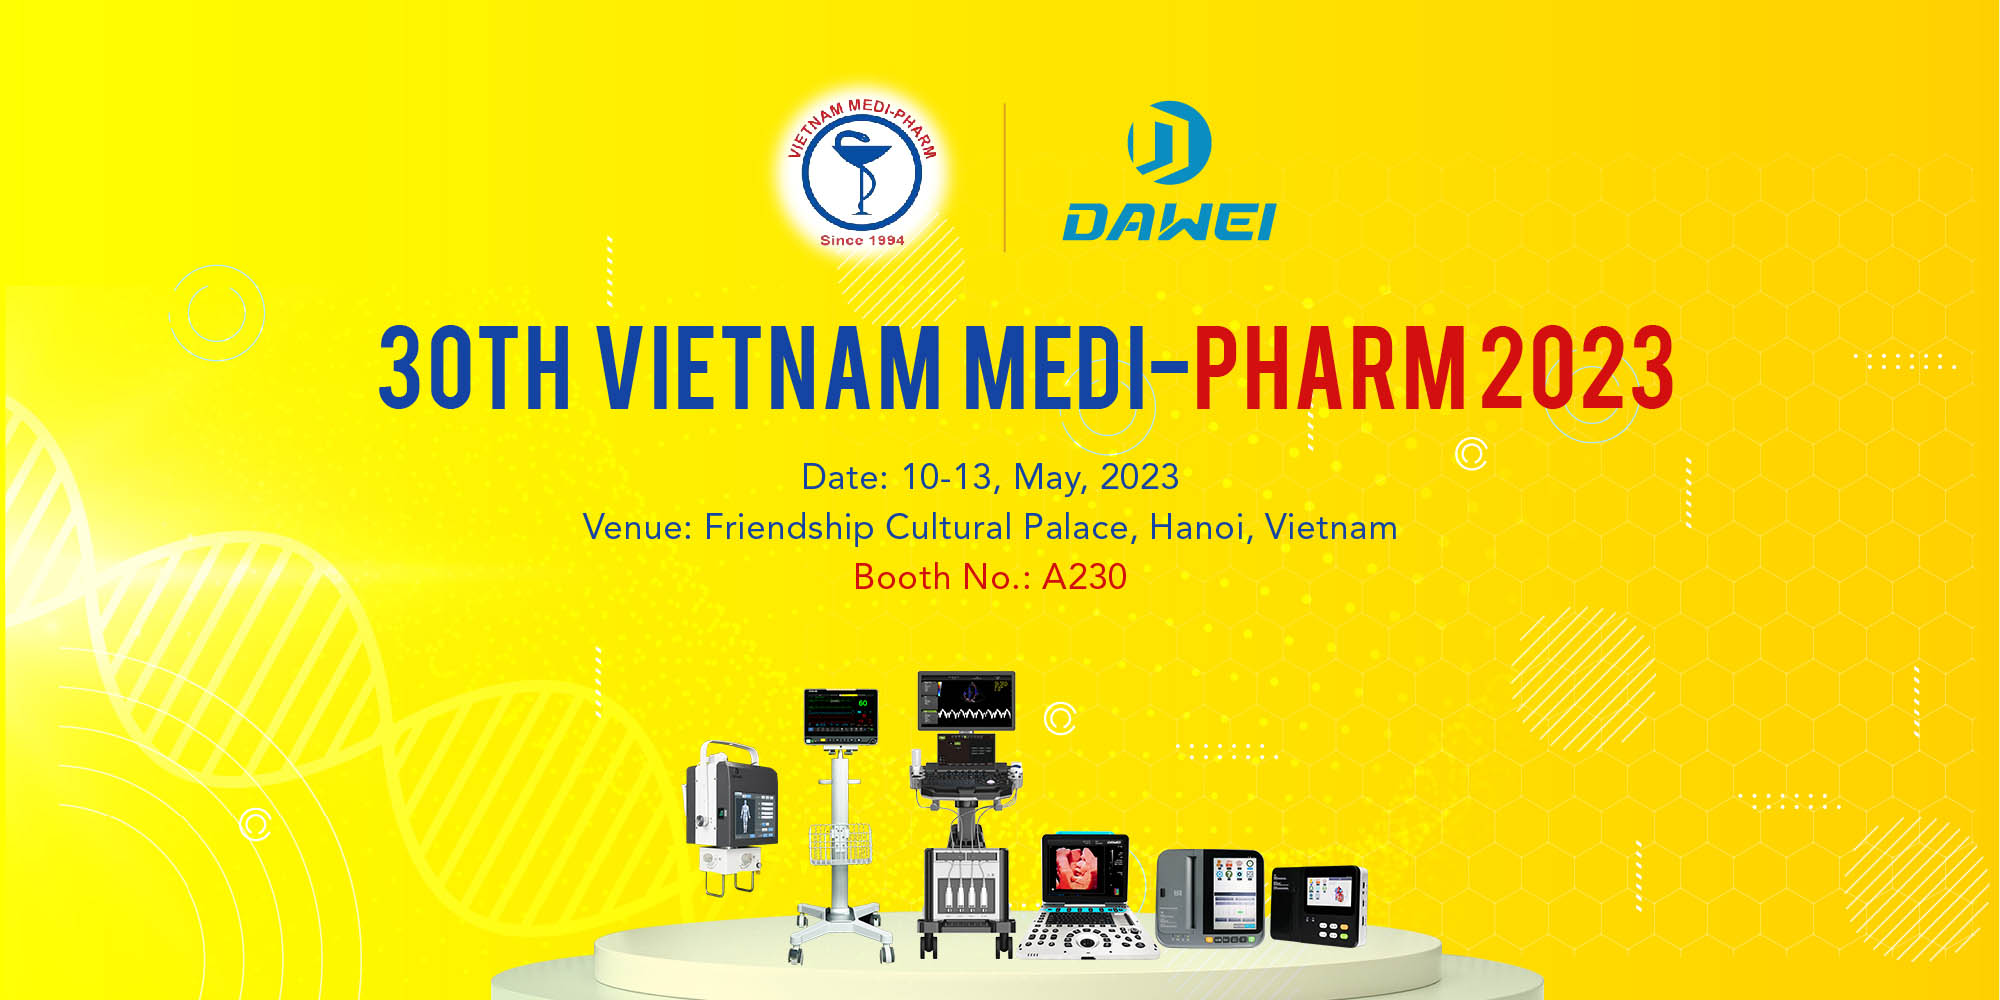 ทวายเมดิคอลจะเข้าร่วมในงาน Vietnam Medi-Pharm 2023 ครั้งที่ 30